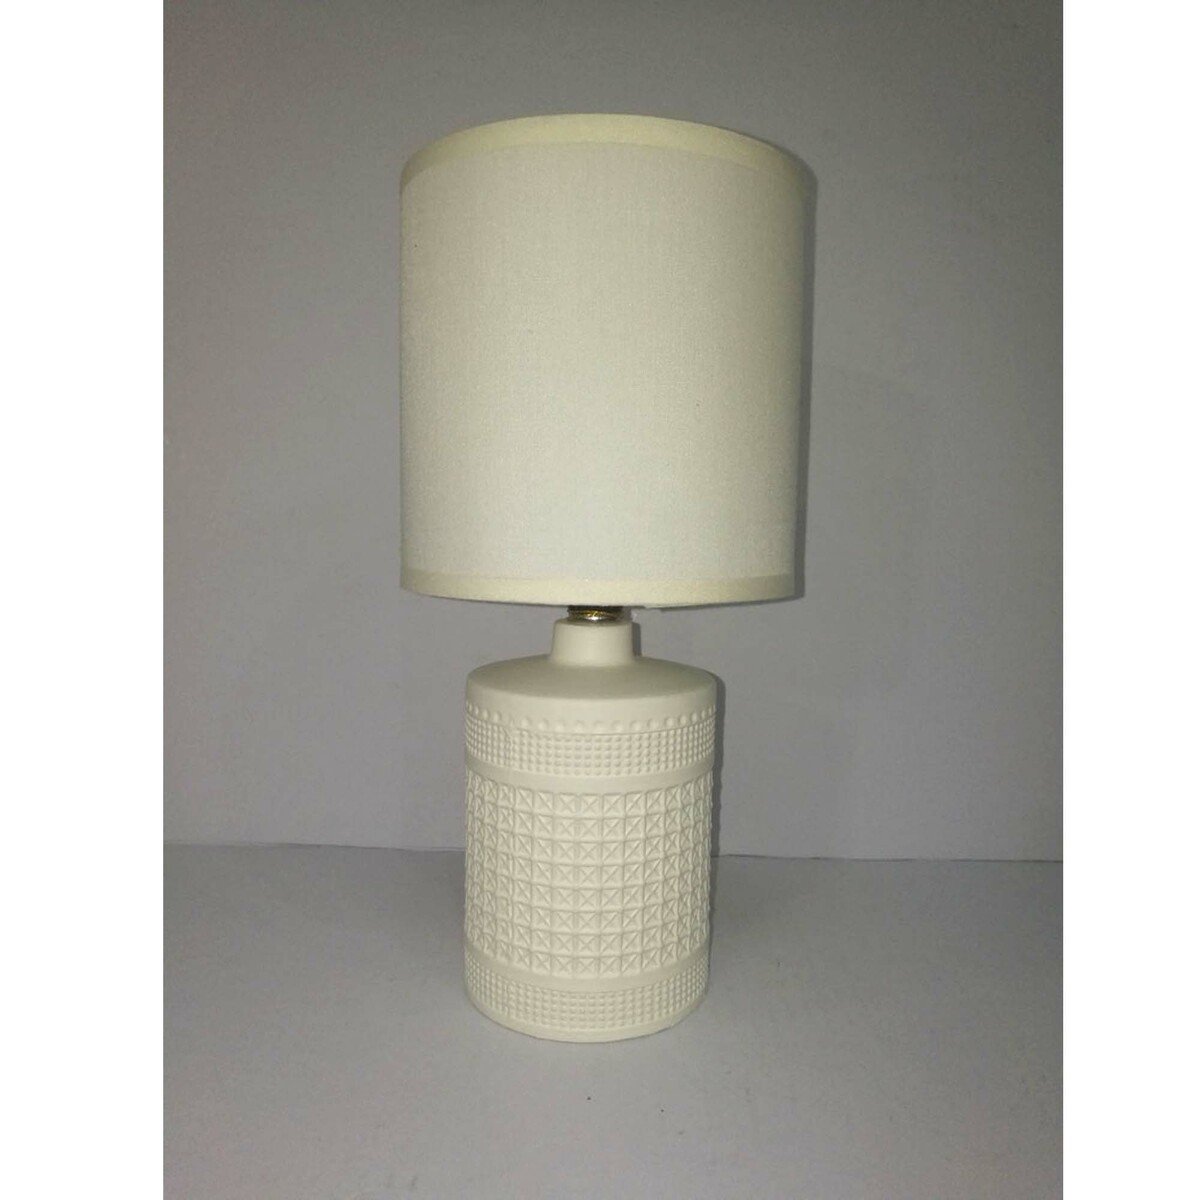 Maple Leaf Ceramic Table Lamp HS8144PRM 13x27cm Assorted